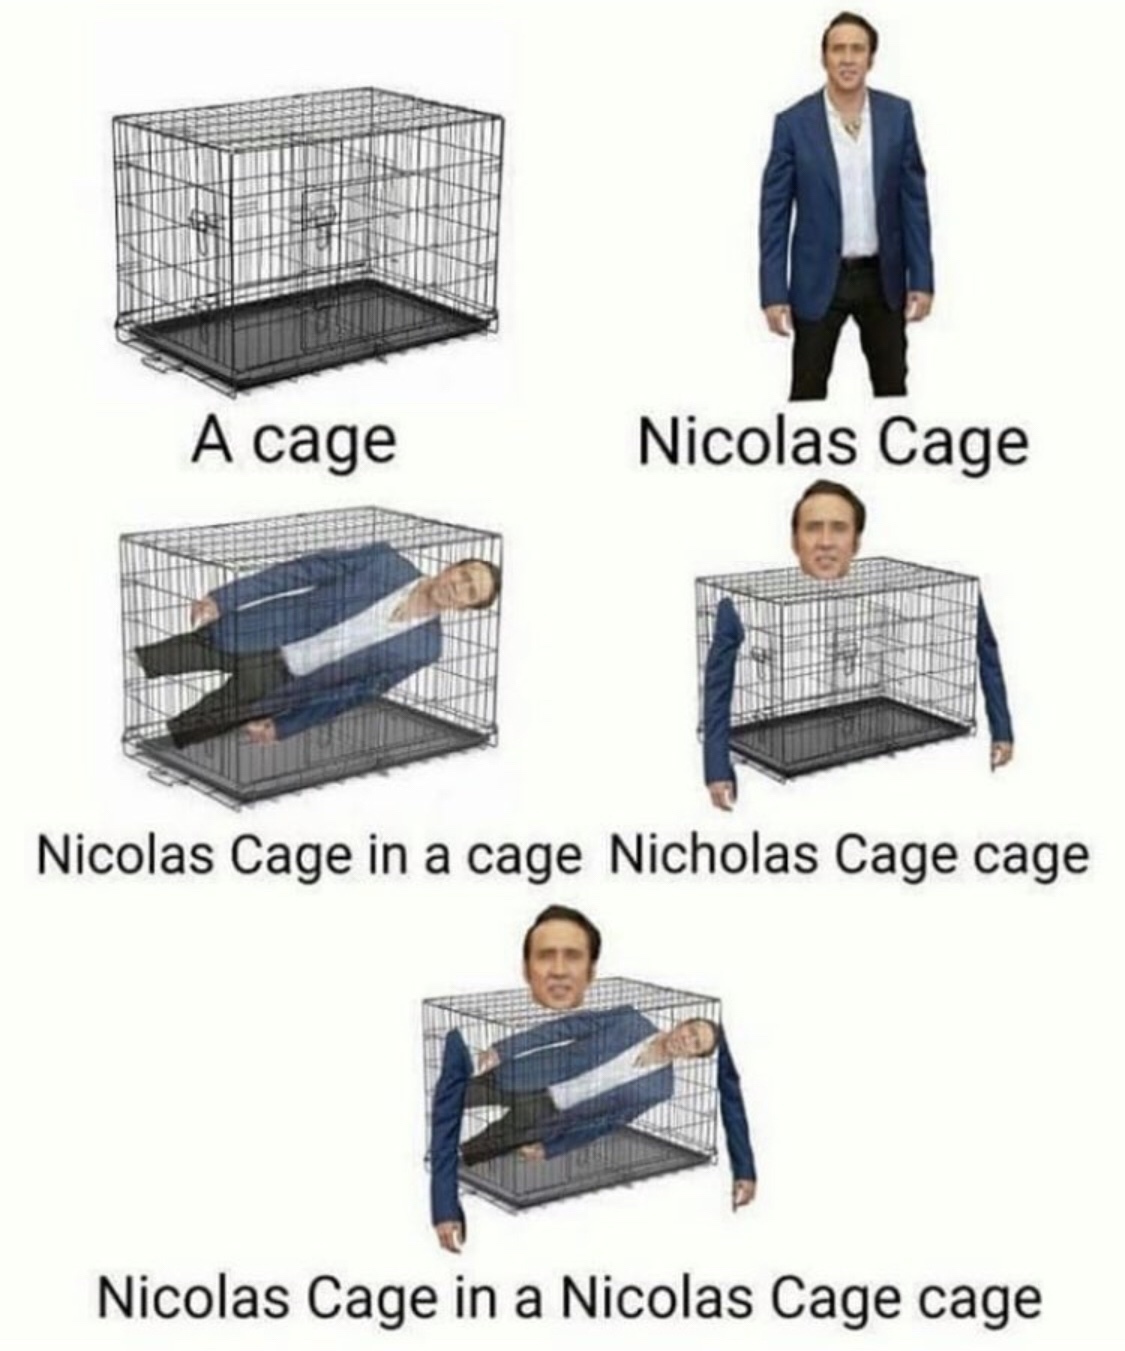 Nicholas cage in a Nicolas cage cage - meme